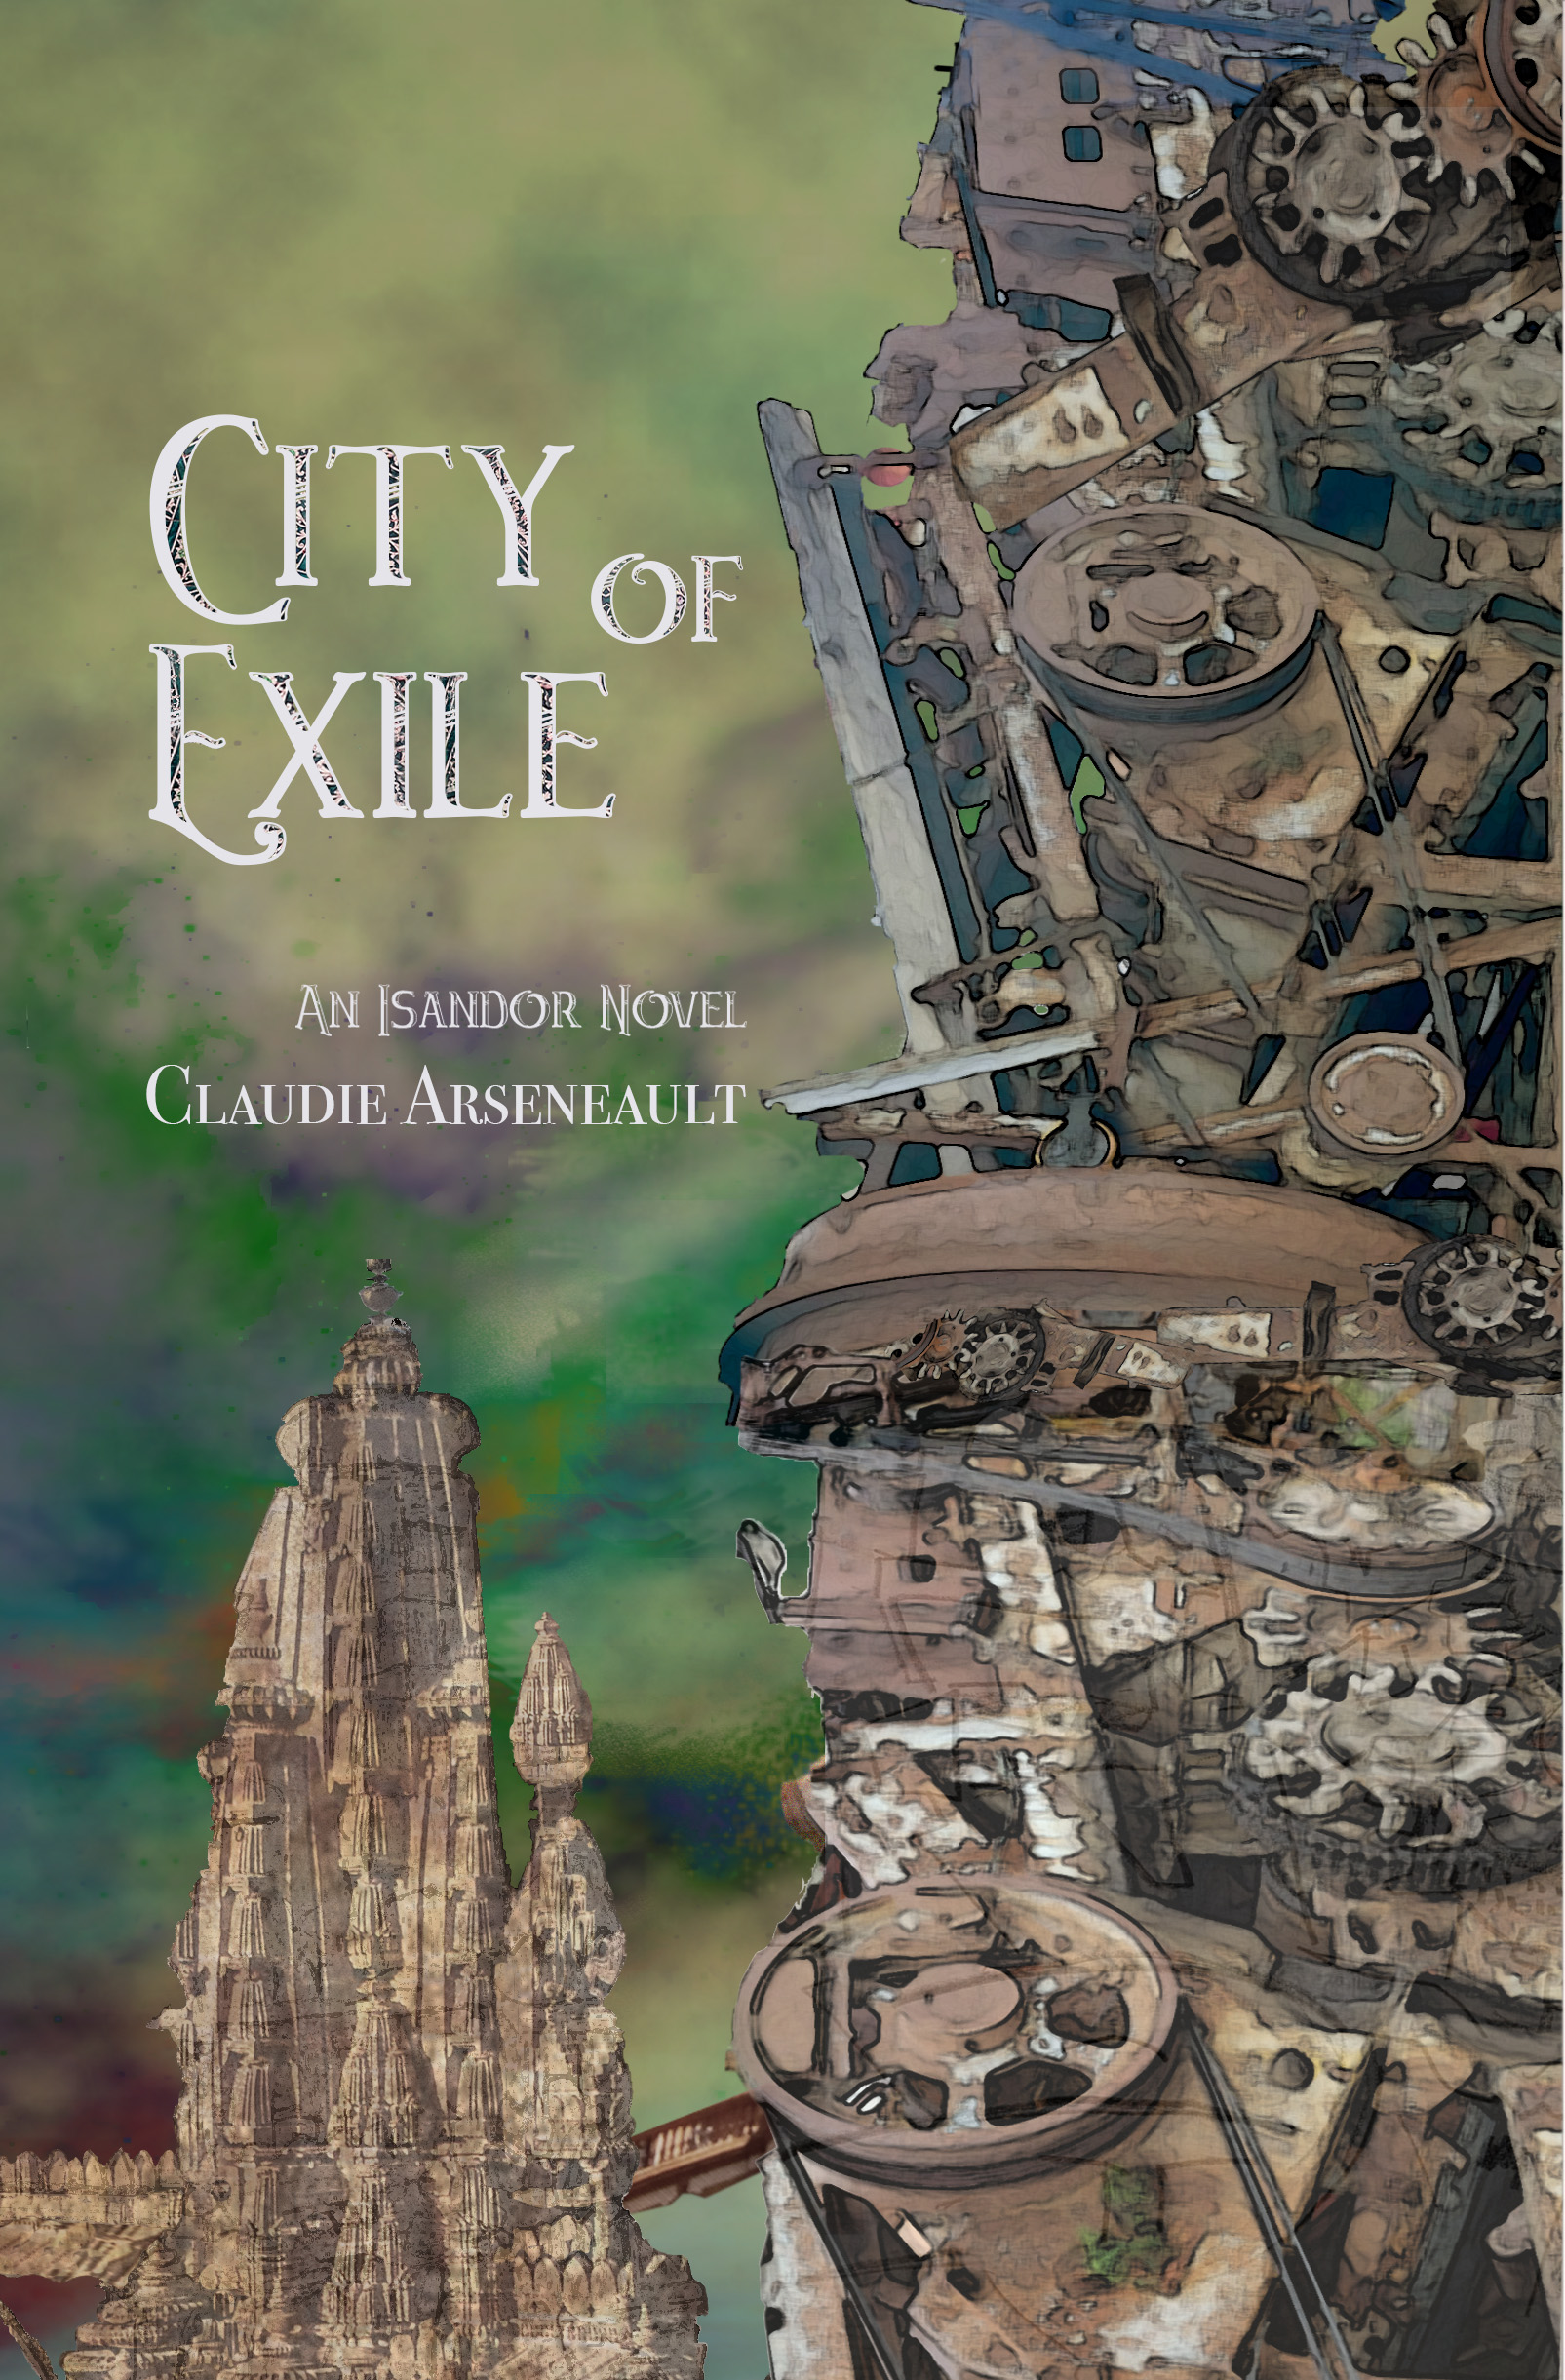 Copertina di City of Exile di Claudie Arseneault: in primo piano c'è il dettaglio di una torre molto intricata e in lontananza, sulla sinistra, se ne vede un'altra.